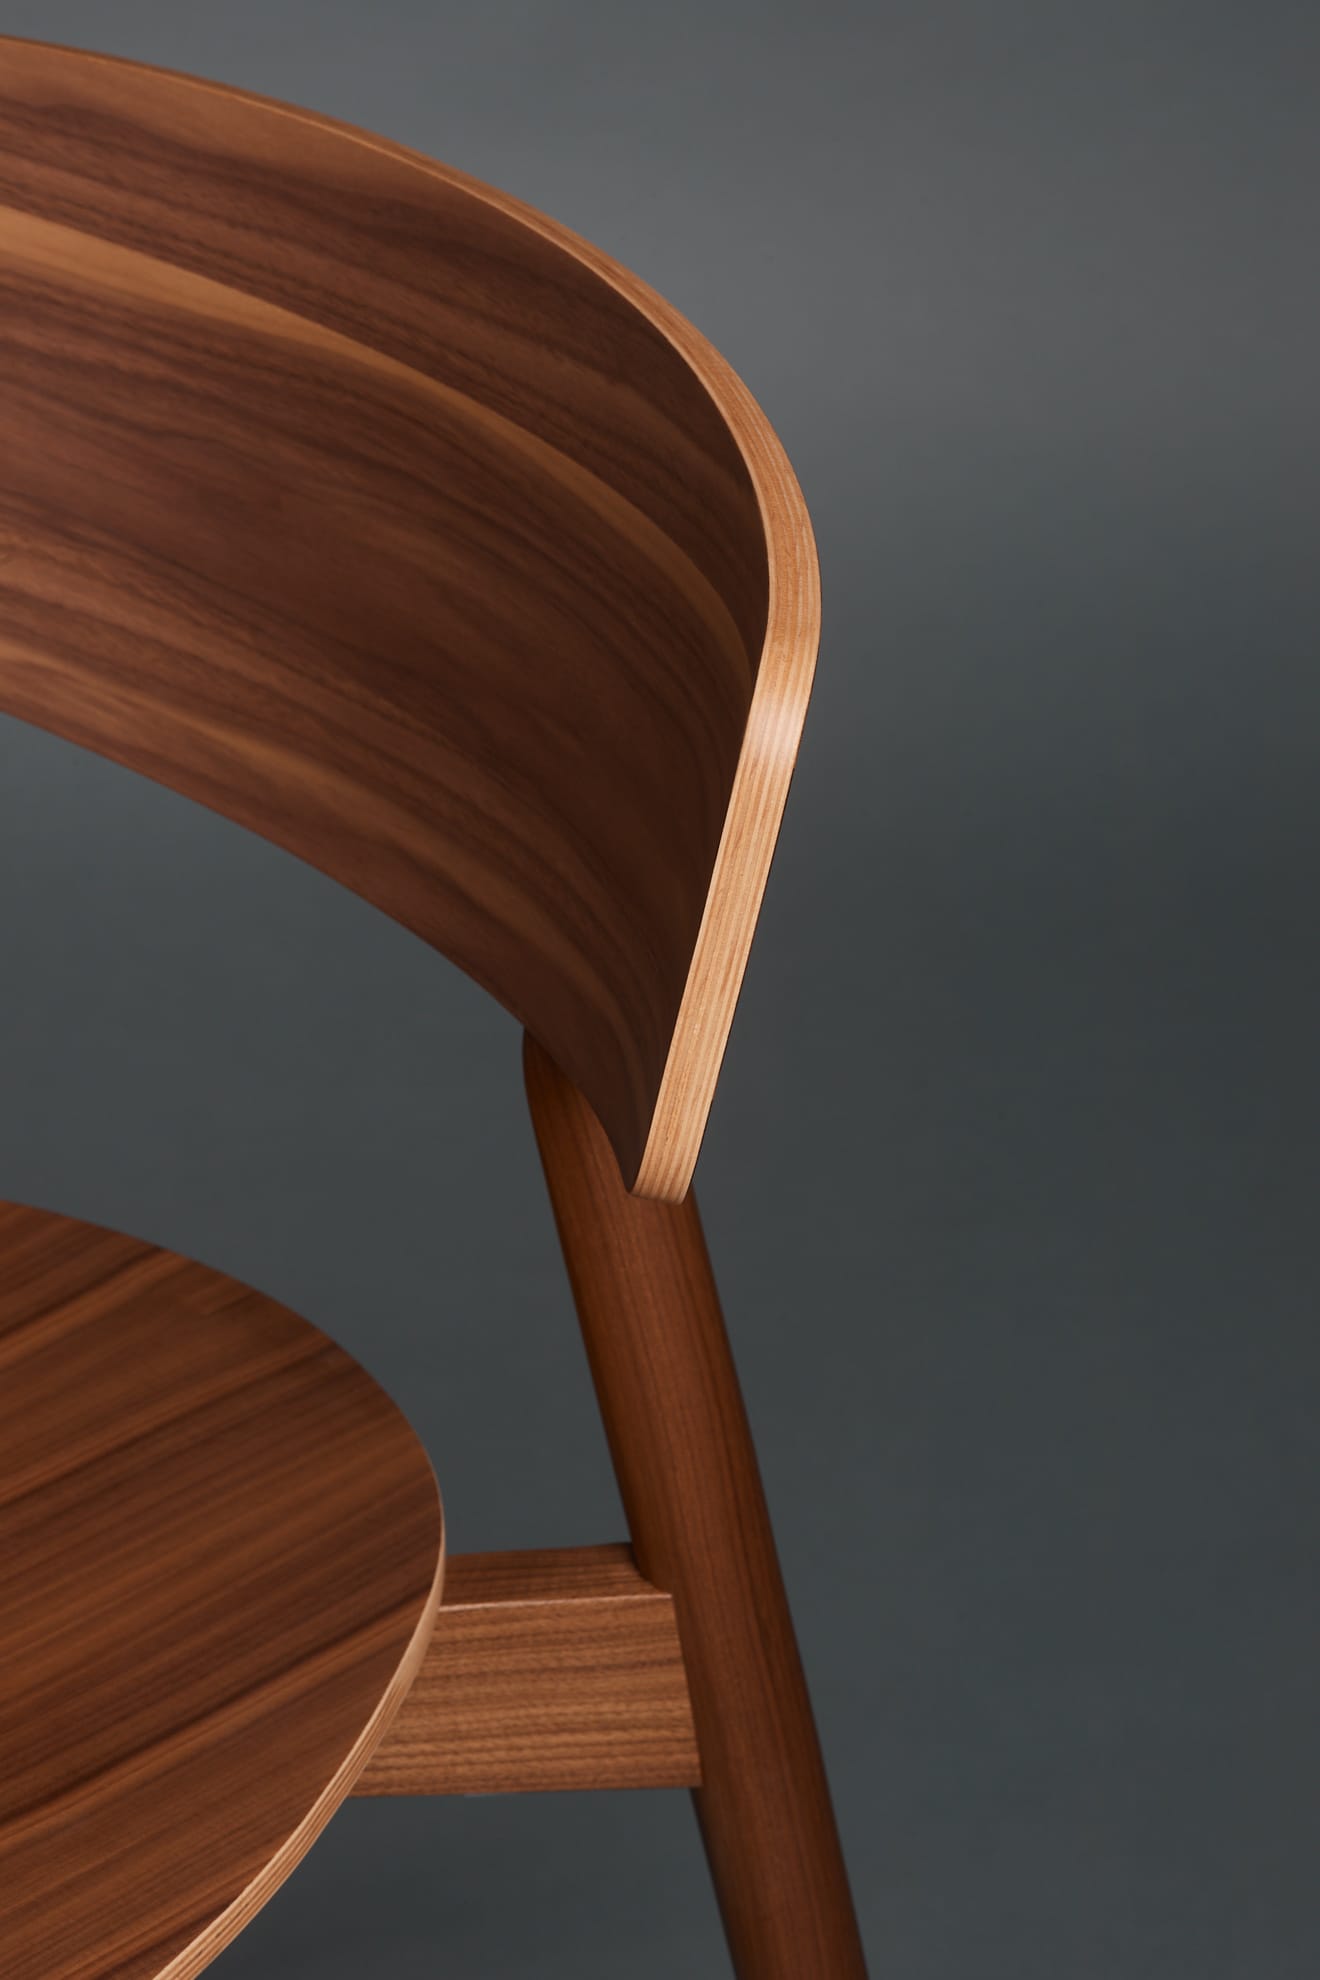 Oricio armchair made of interwoven zip ties is part of the design studio projects